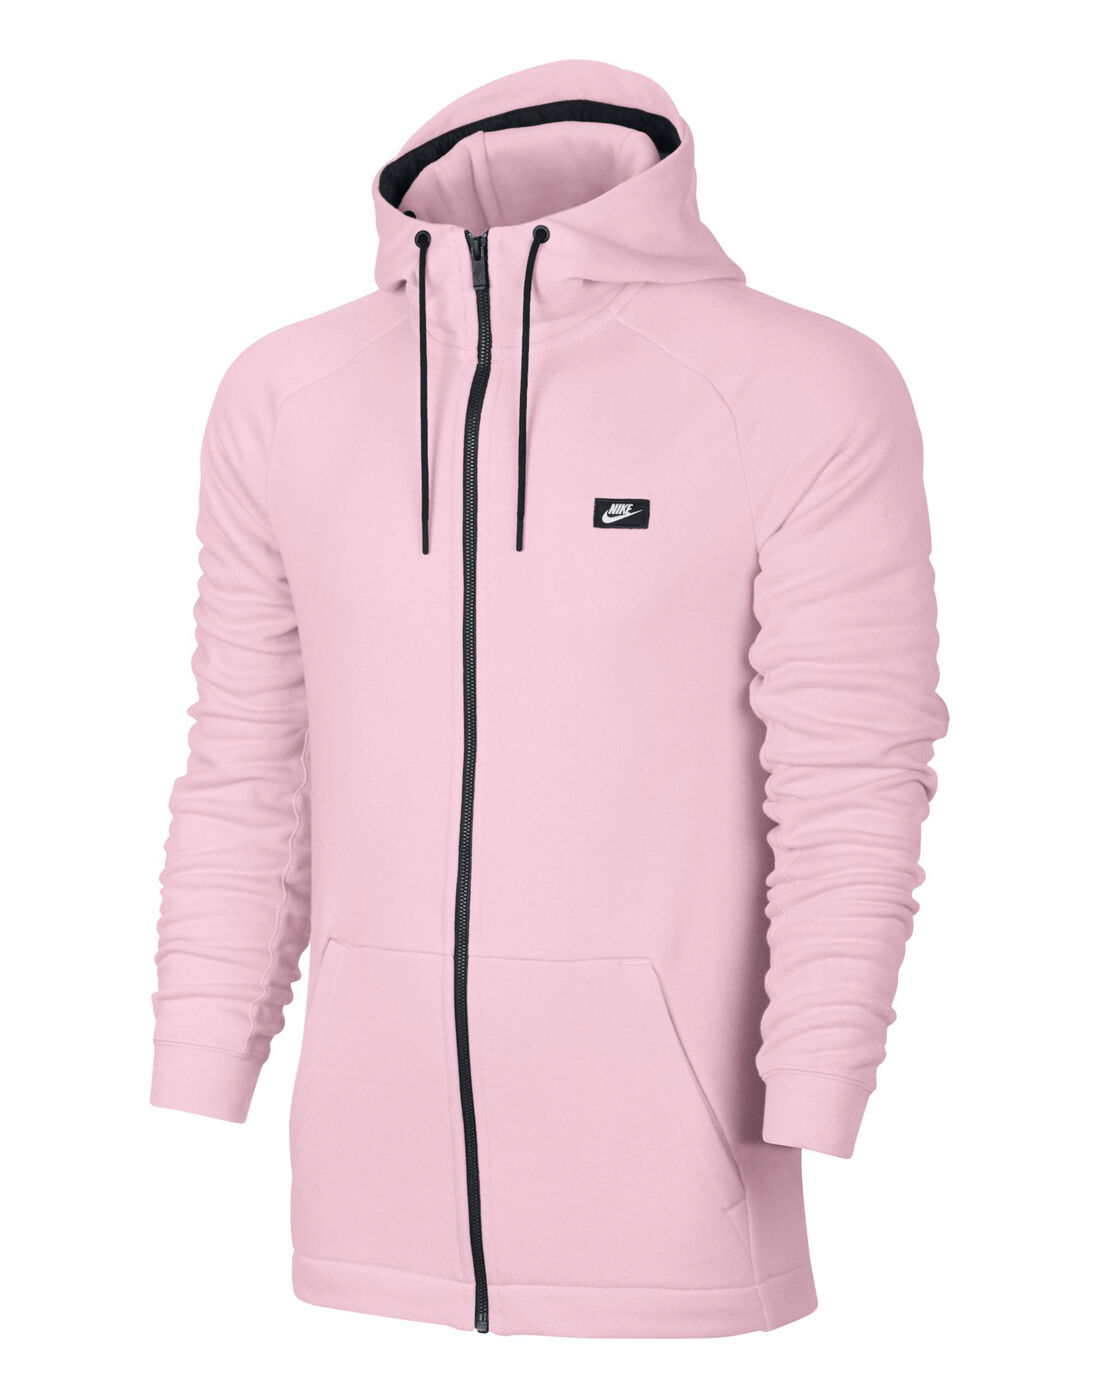 pink nike zip up jacket